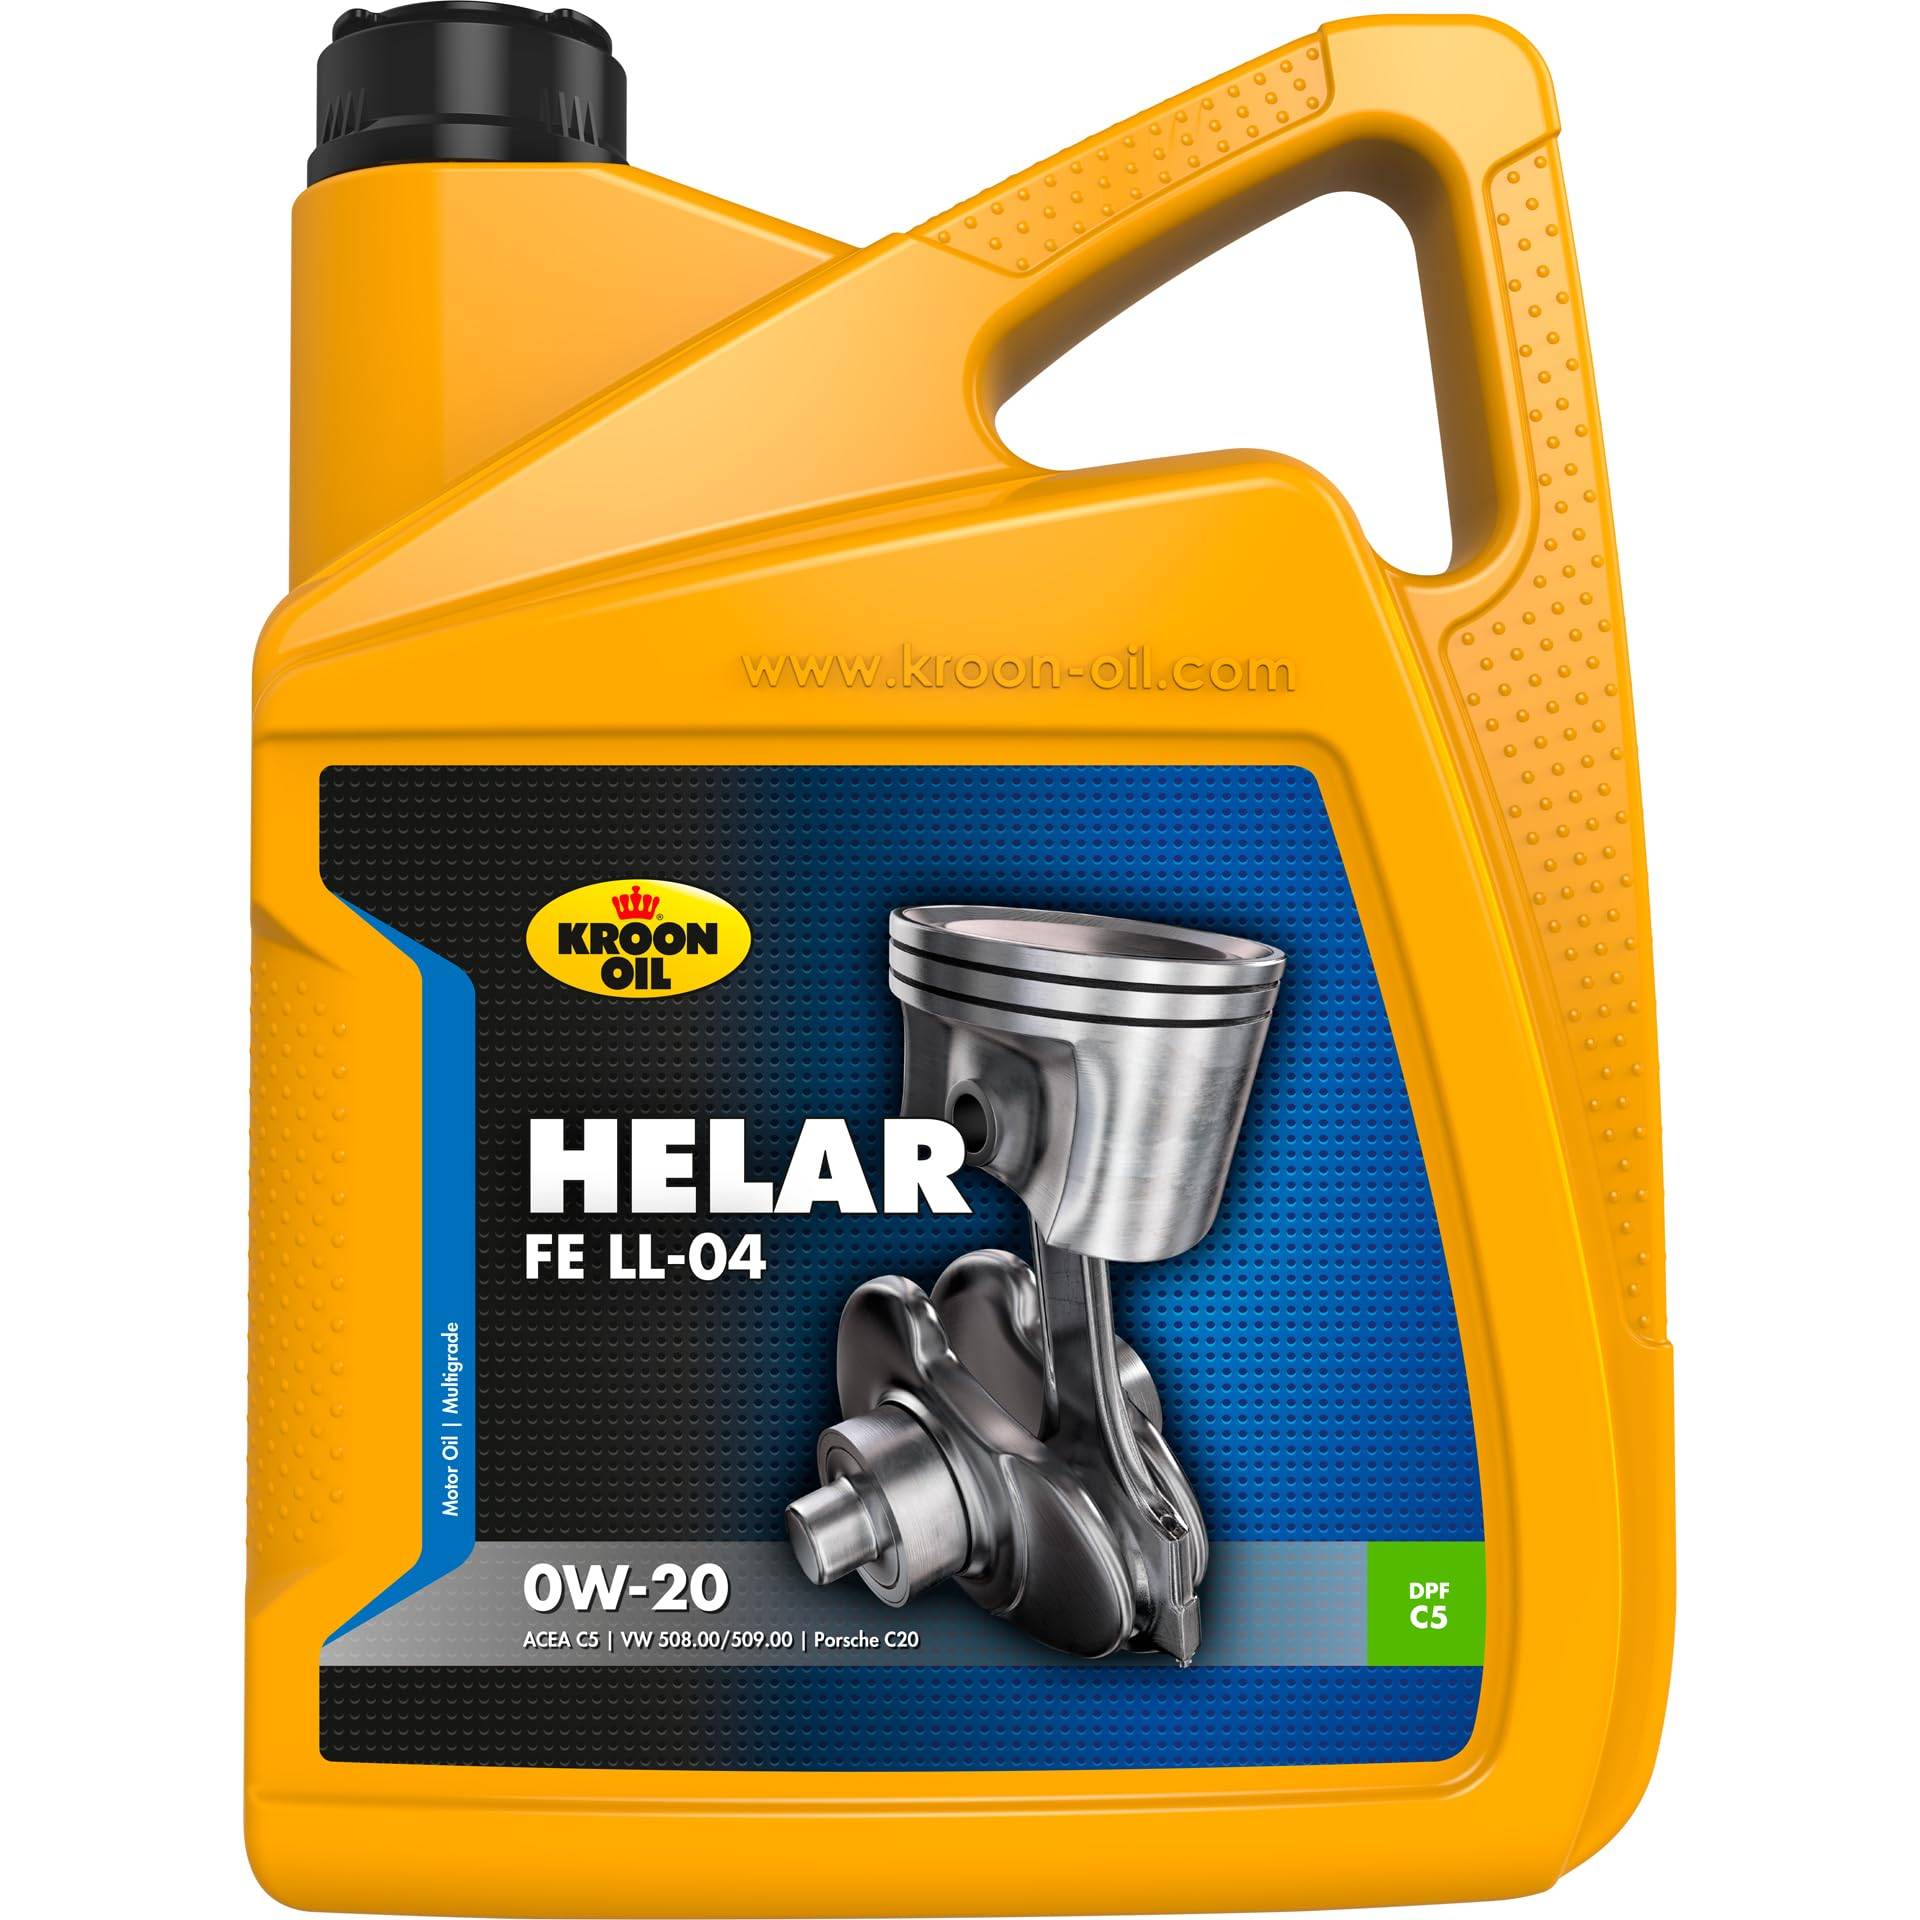 Kroon-Oil 32496 Helar FE LL-04 0W-20 5 Liter von Kroon-Oil